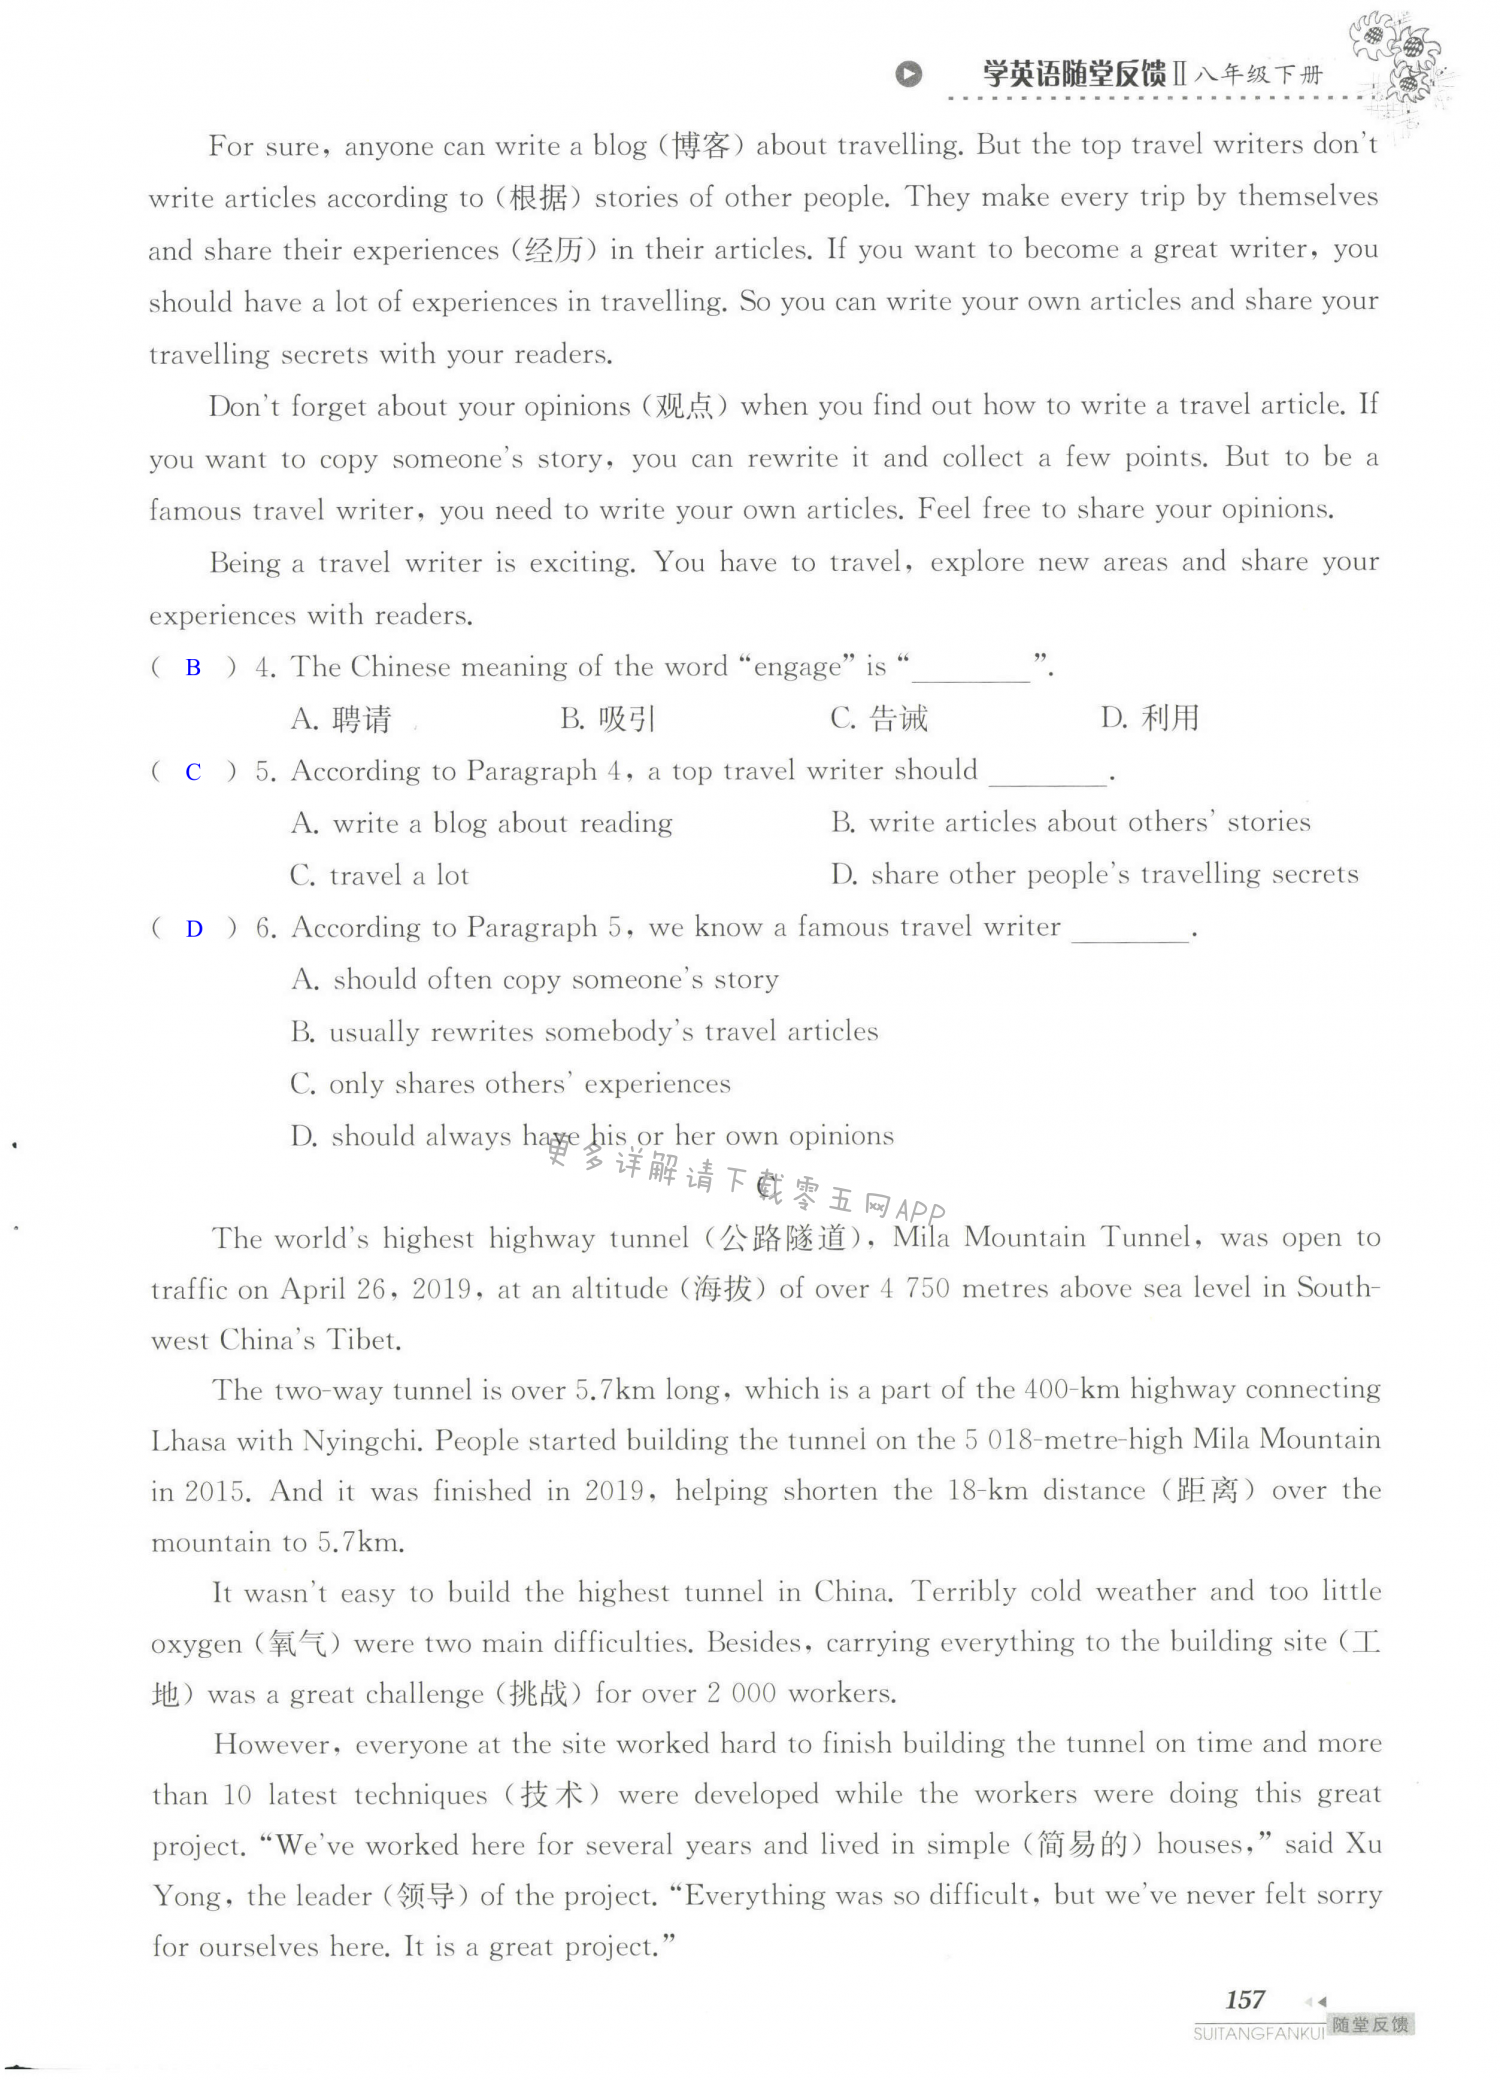 单元综合测试卷 Test for Unit 2 of 8B - 第157页